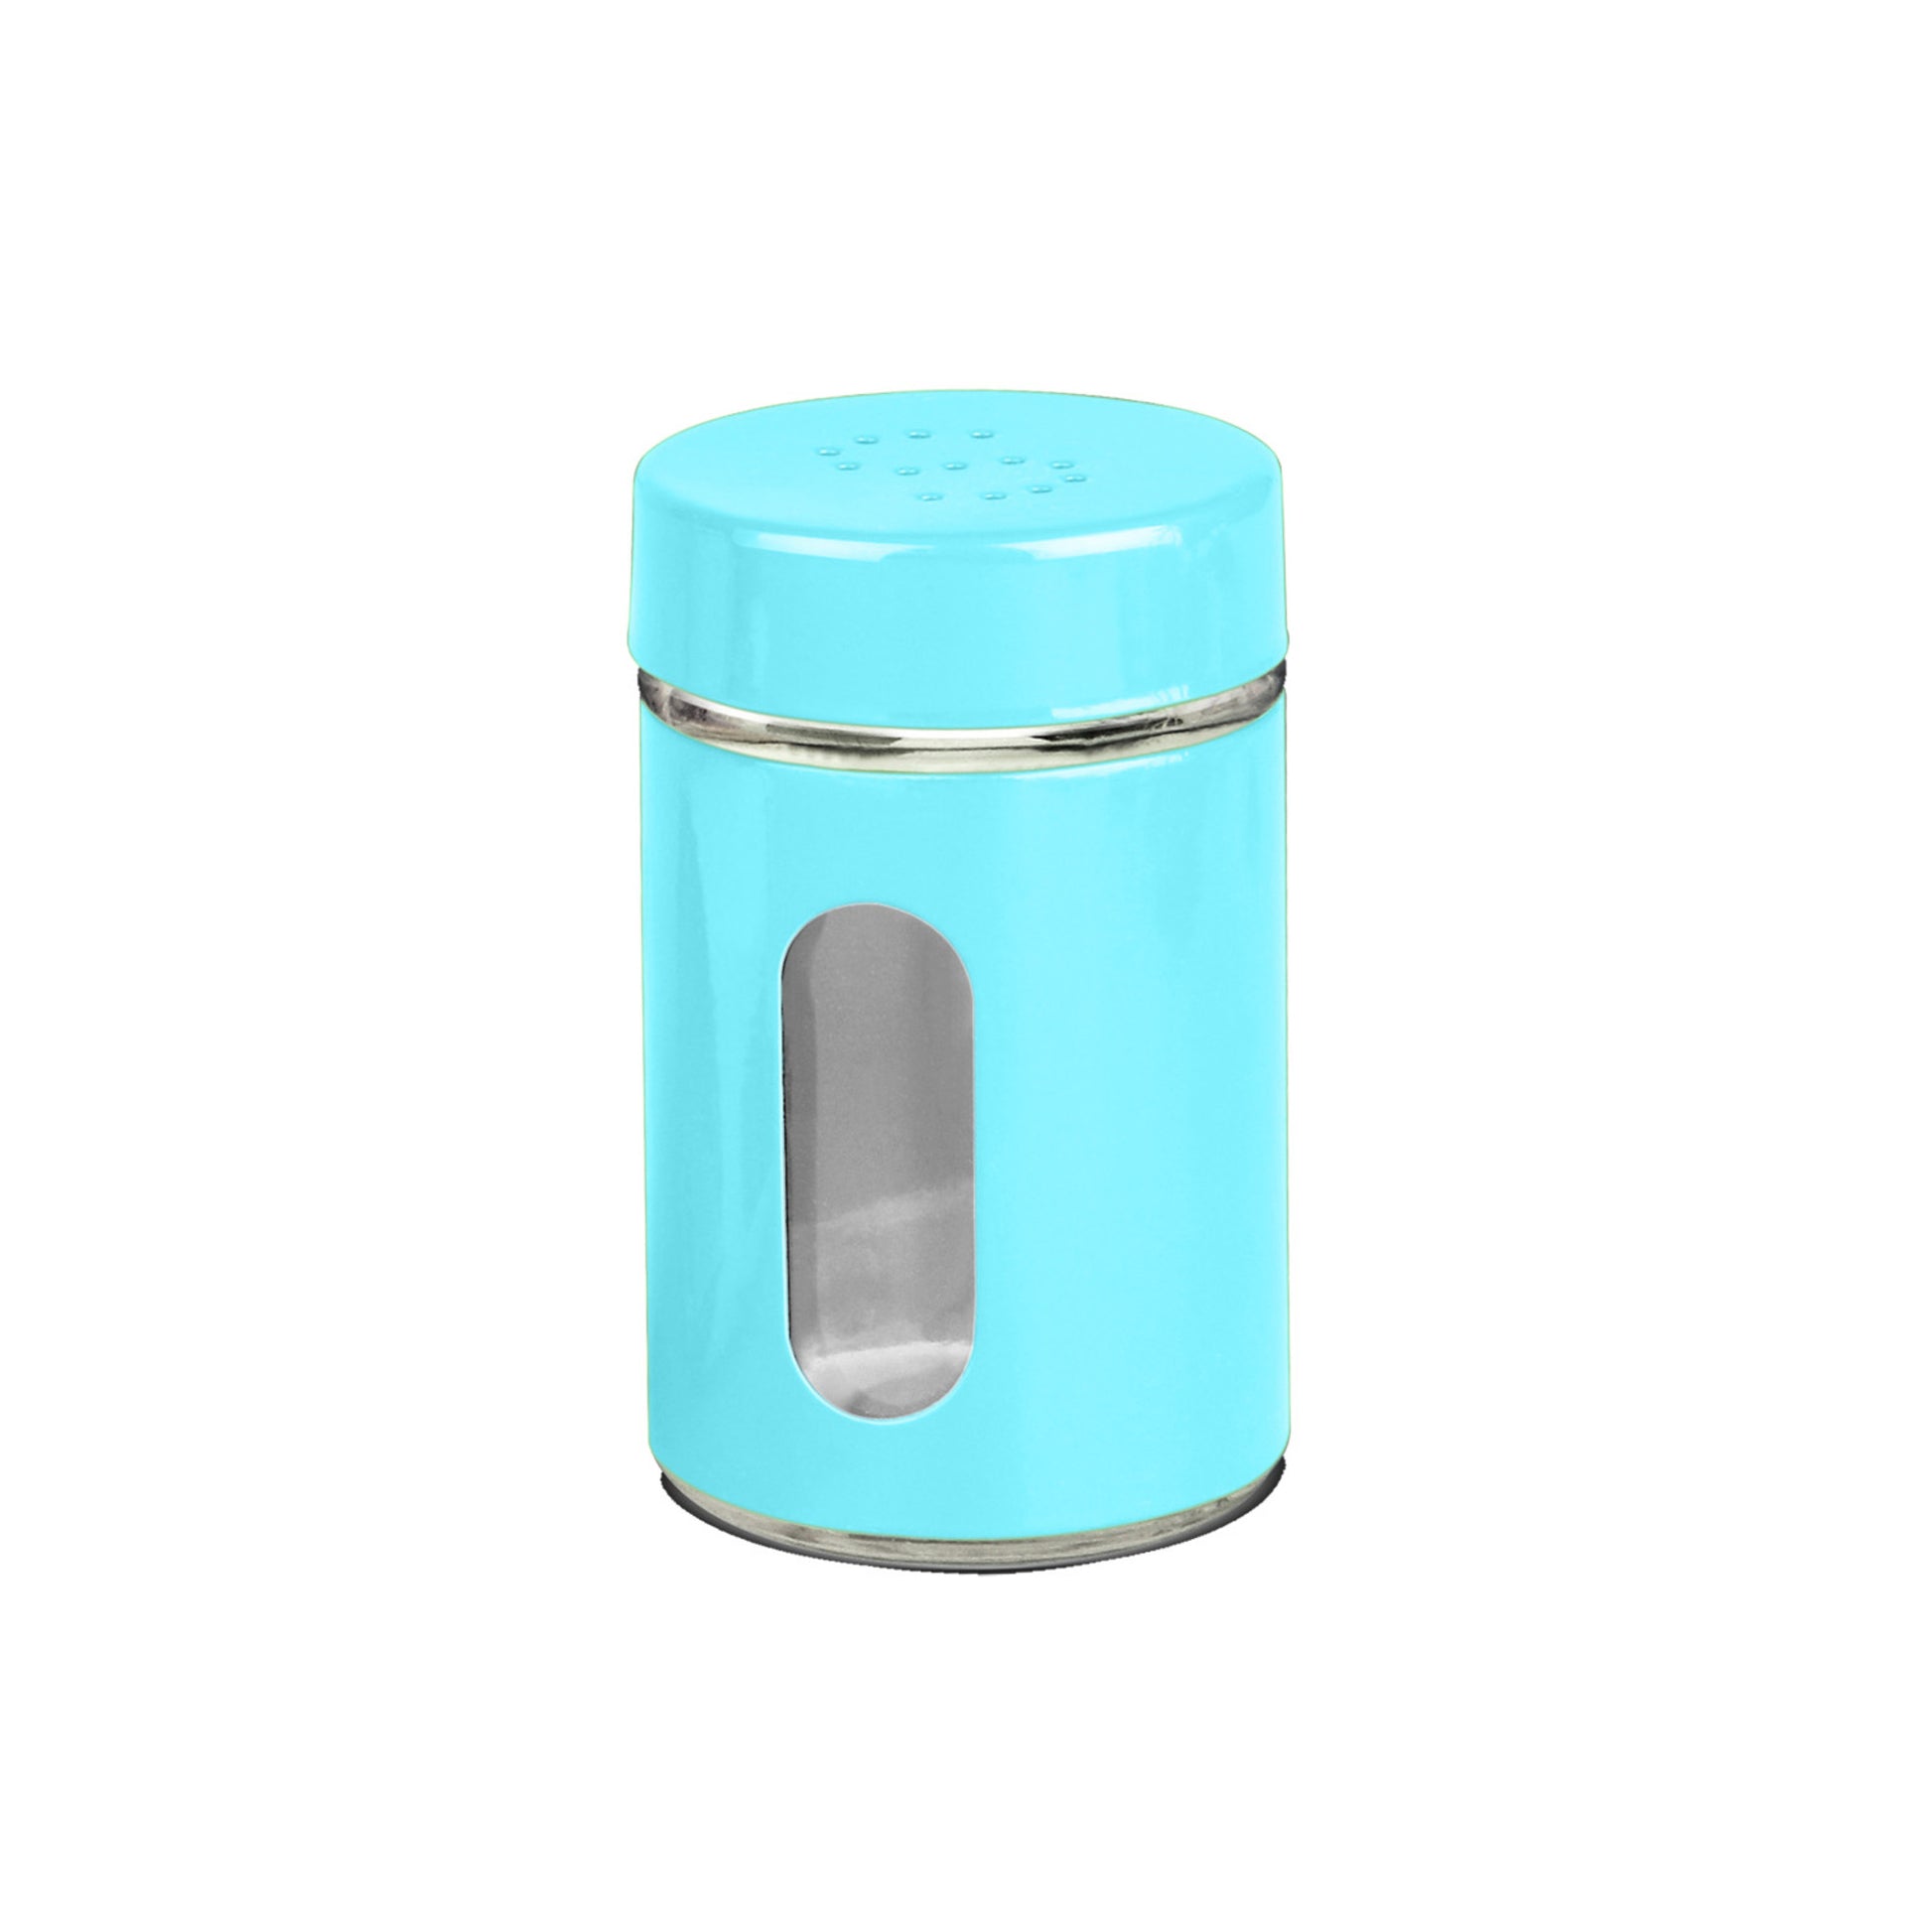 Home Basics Salt & Pepper Shaker - Blue